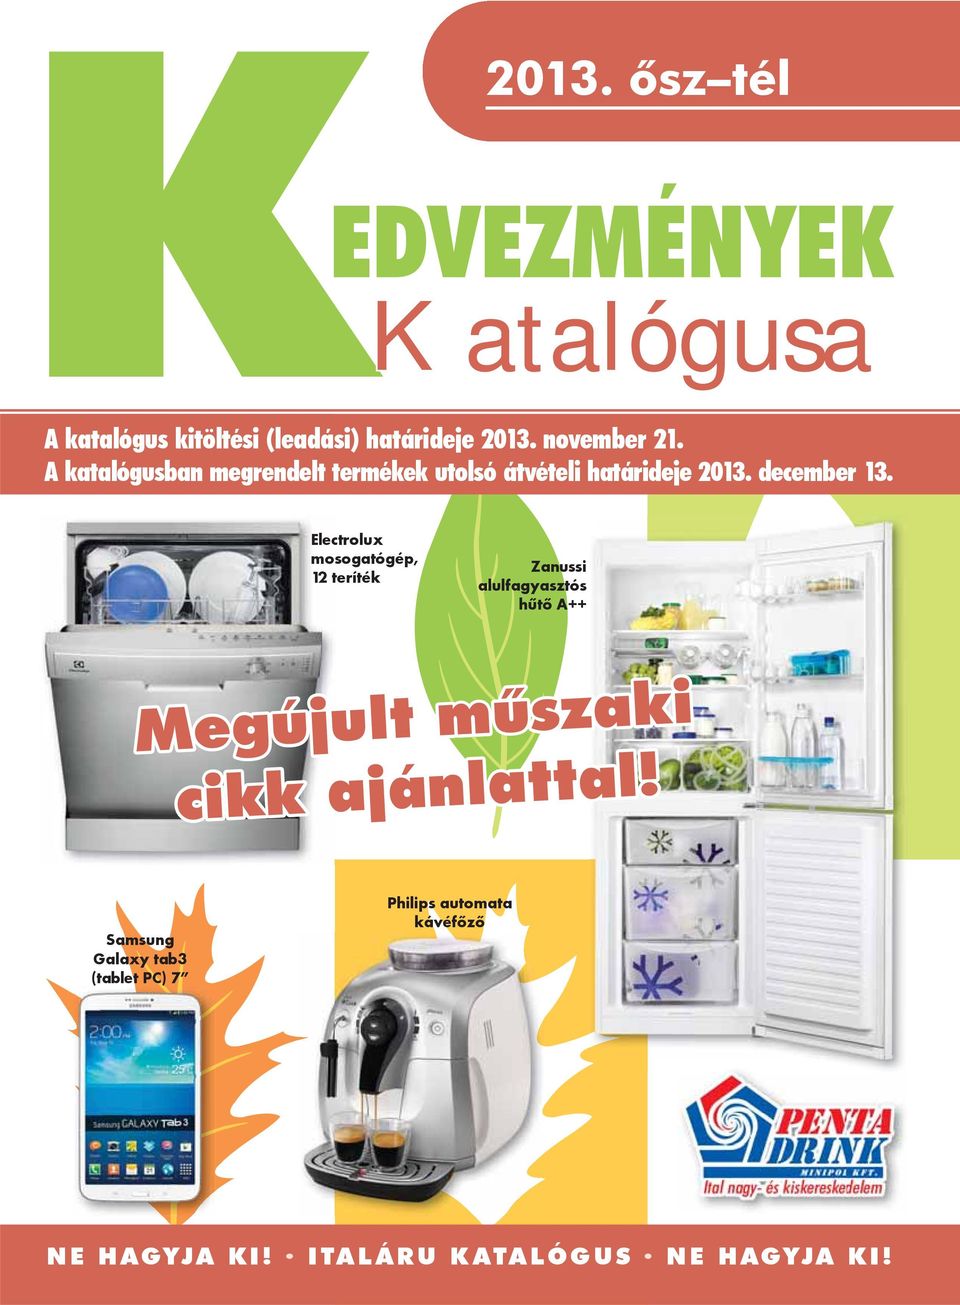 Electrolux mosogatógép, 12 teríték Zanussi alulfagyasztós hűtő A++ Megújult műszaki cikk